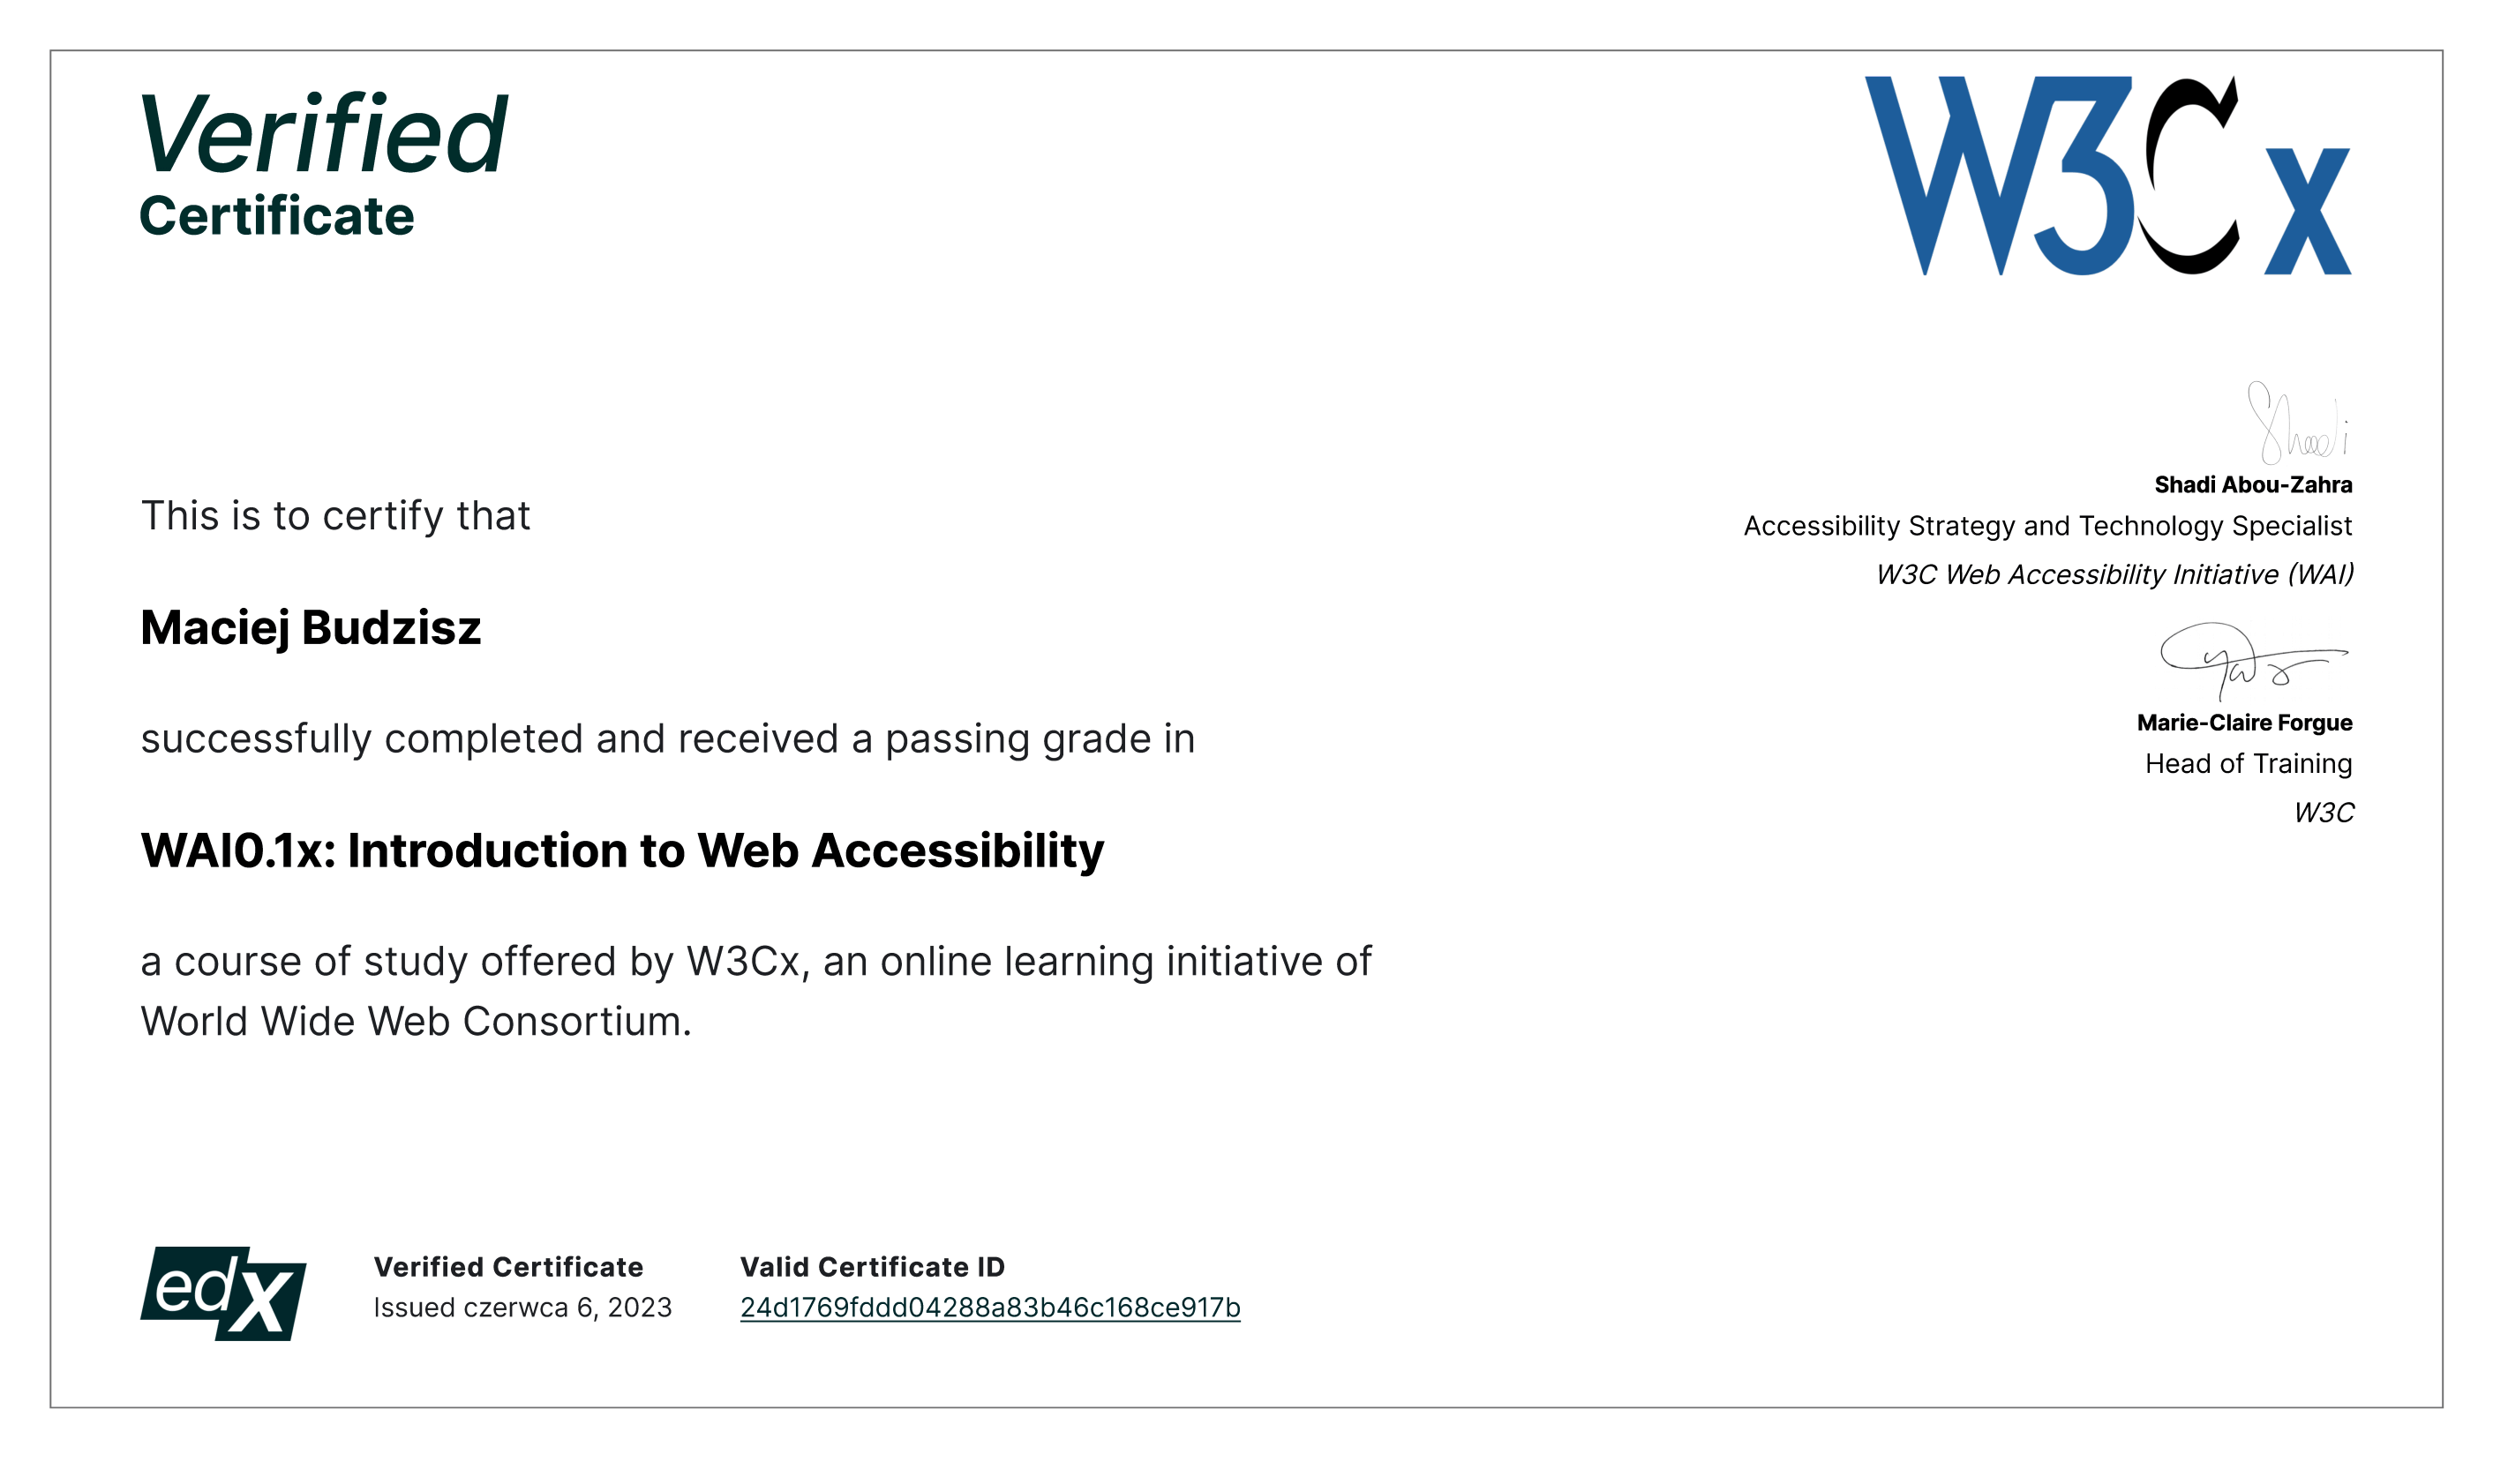 Certyfikat W3Cx ma to potwierdzić Macieja Budzisza Pomyślnie ukończył i uzyskał ocenę pozytywną w WAI0.1x: Wprowadzenie do dostępności sieci, kurs oferowany przez W3Cx, internetową inicjatywę edukacyjną konsorcjum World Wide Web.